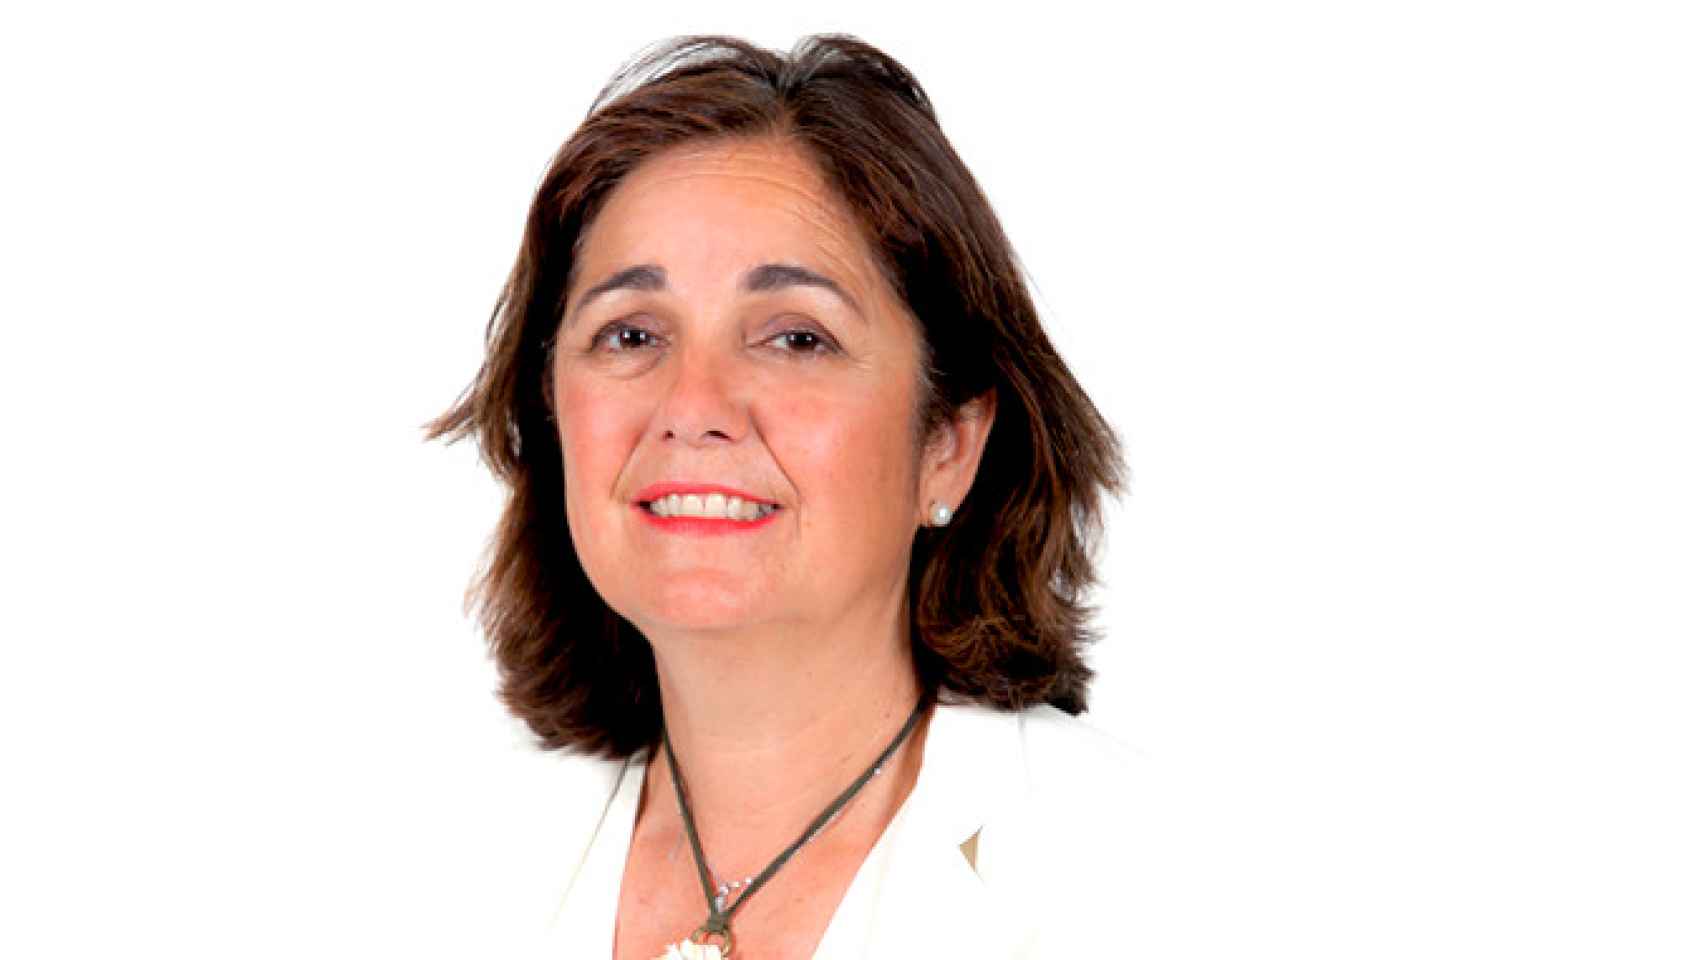 Beatriz Escudero, diputada del PP